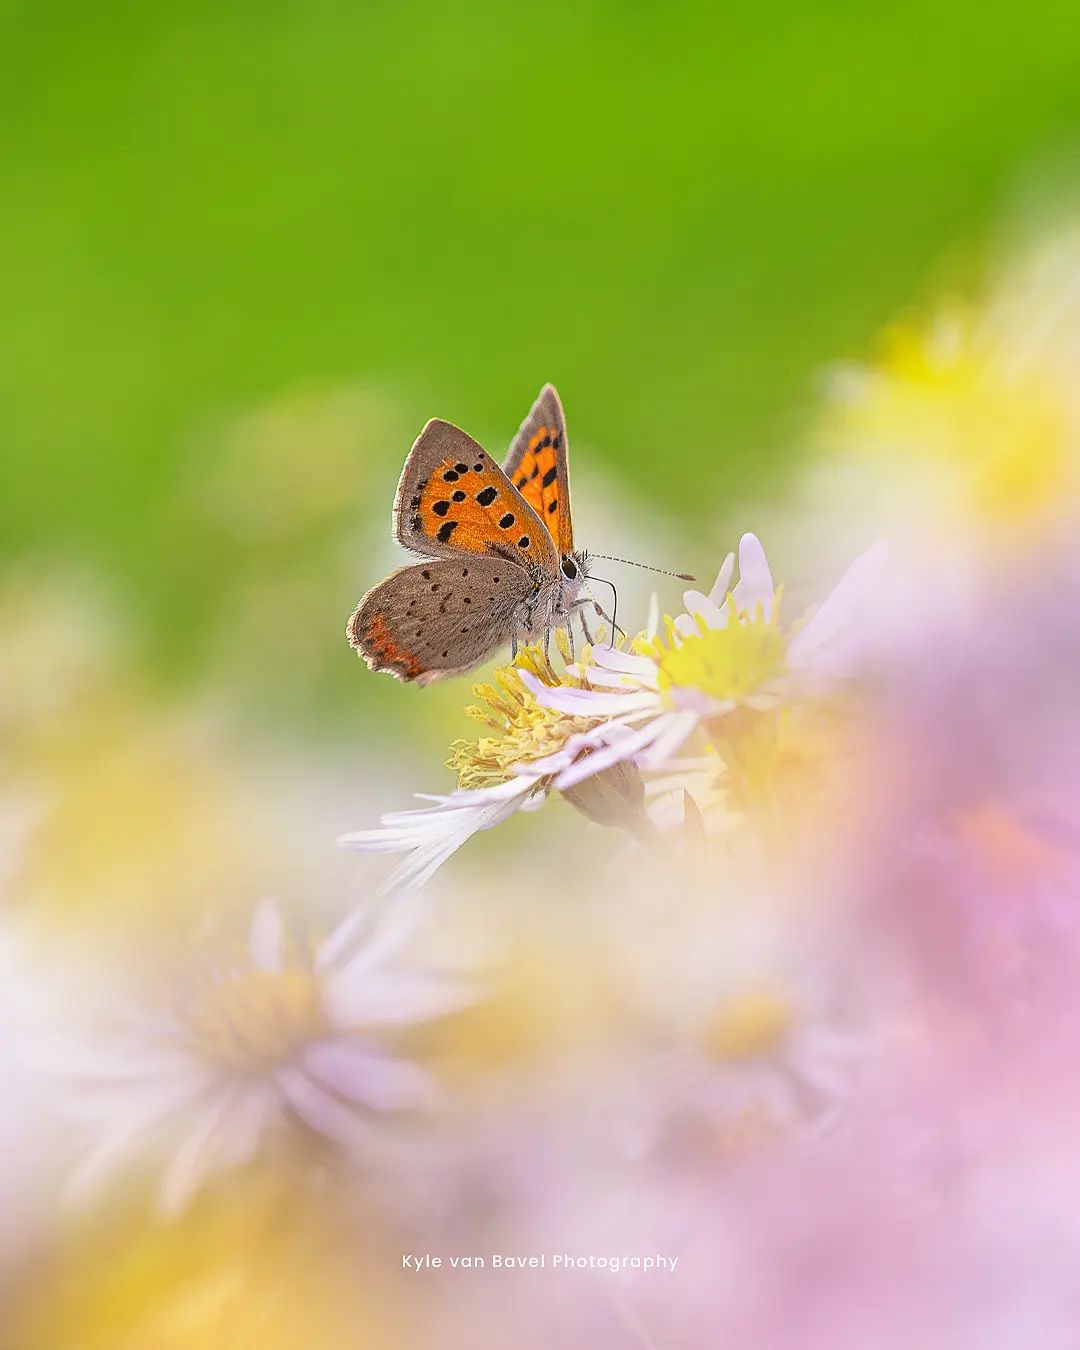 Грибы, цветы и насекомые на макроснимках Кайла ван Бавела Природа